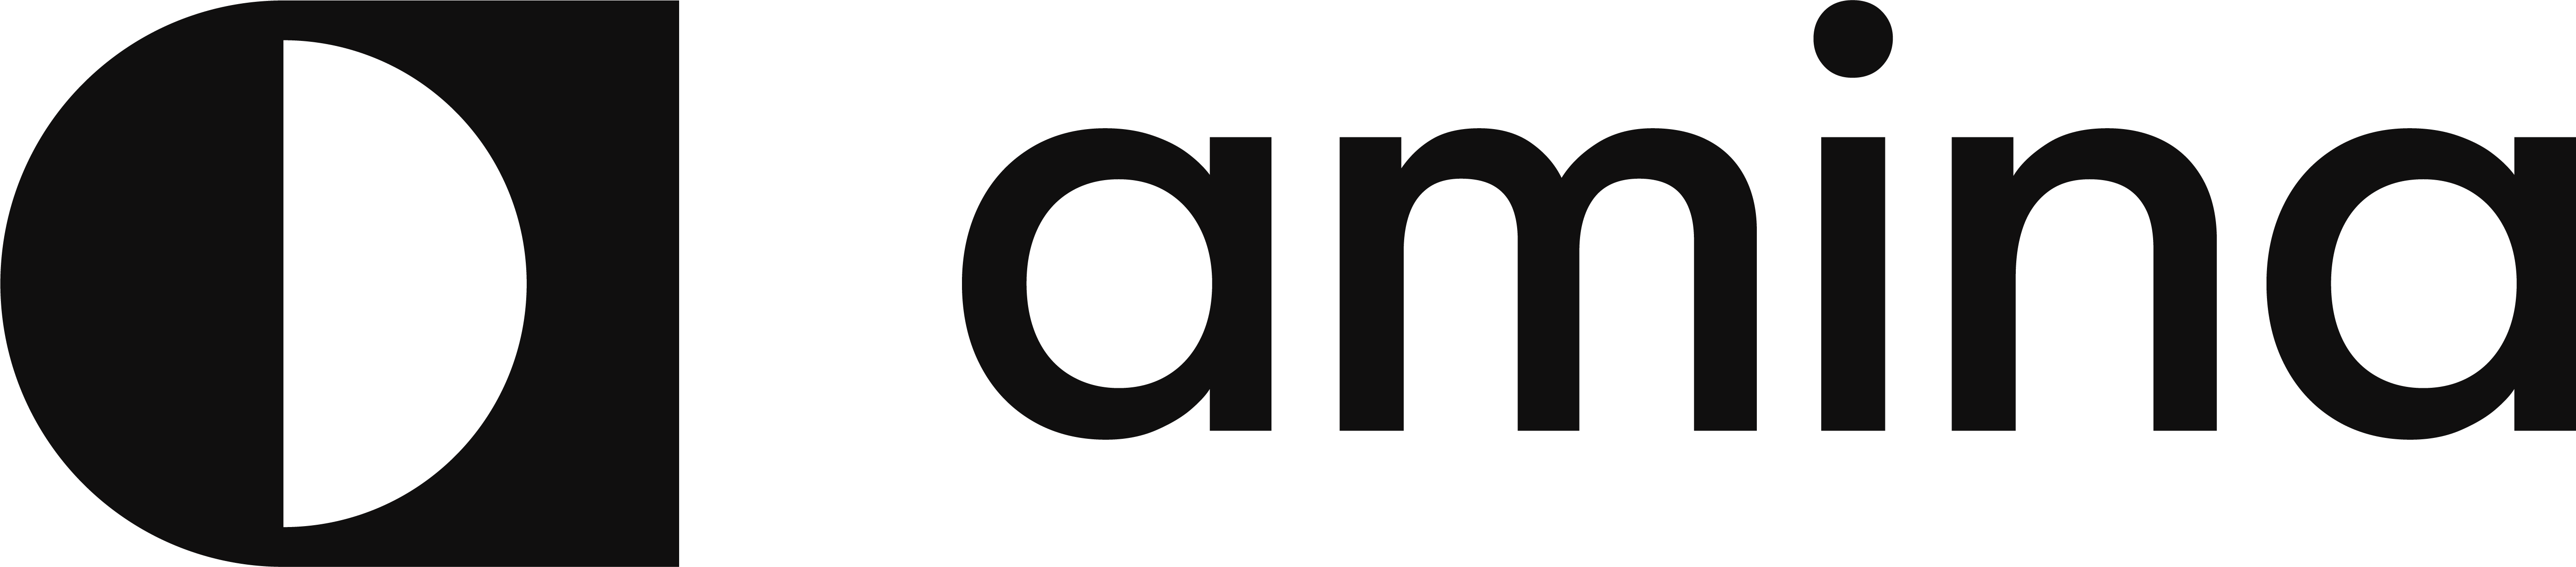 logo for Amina charging